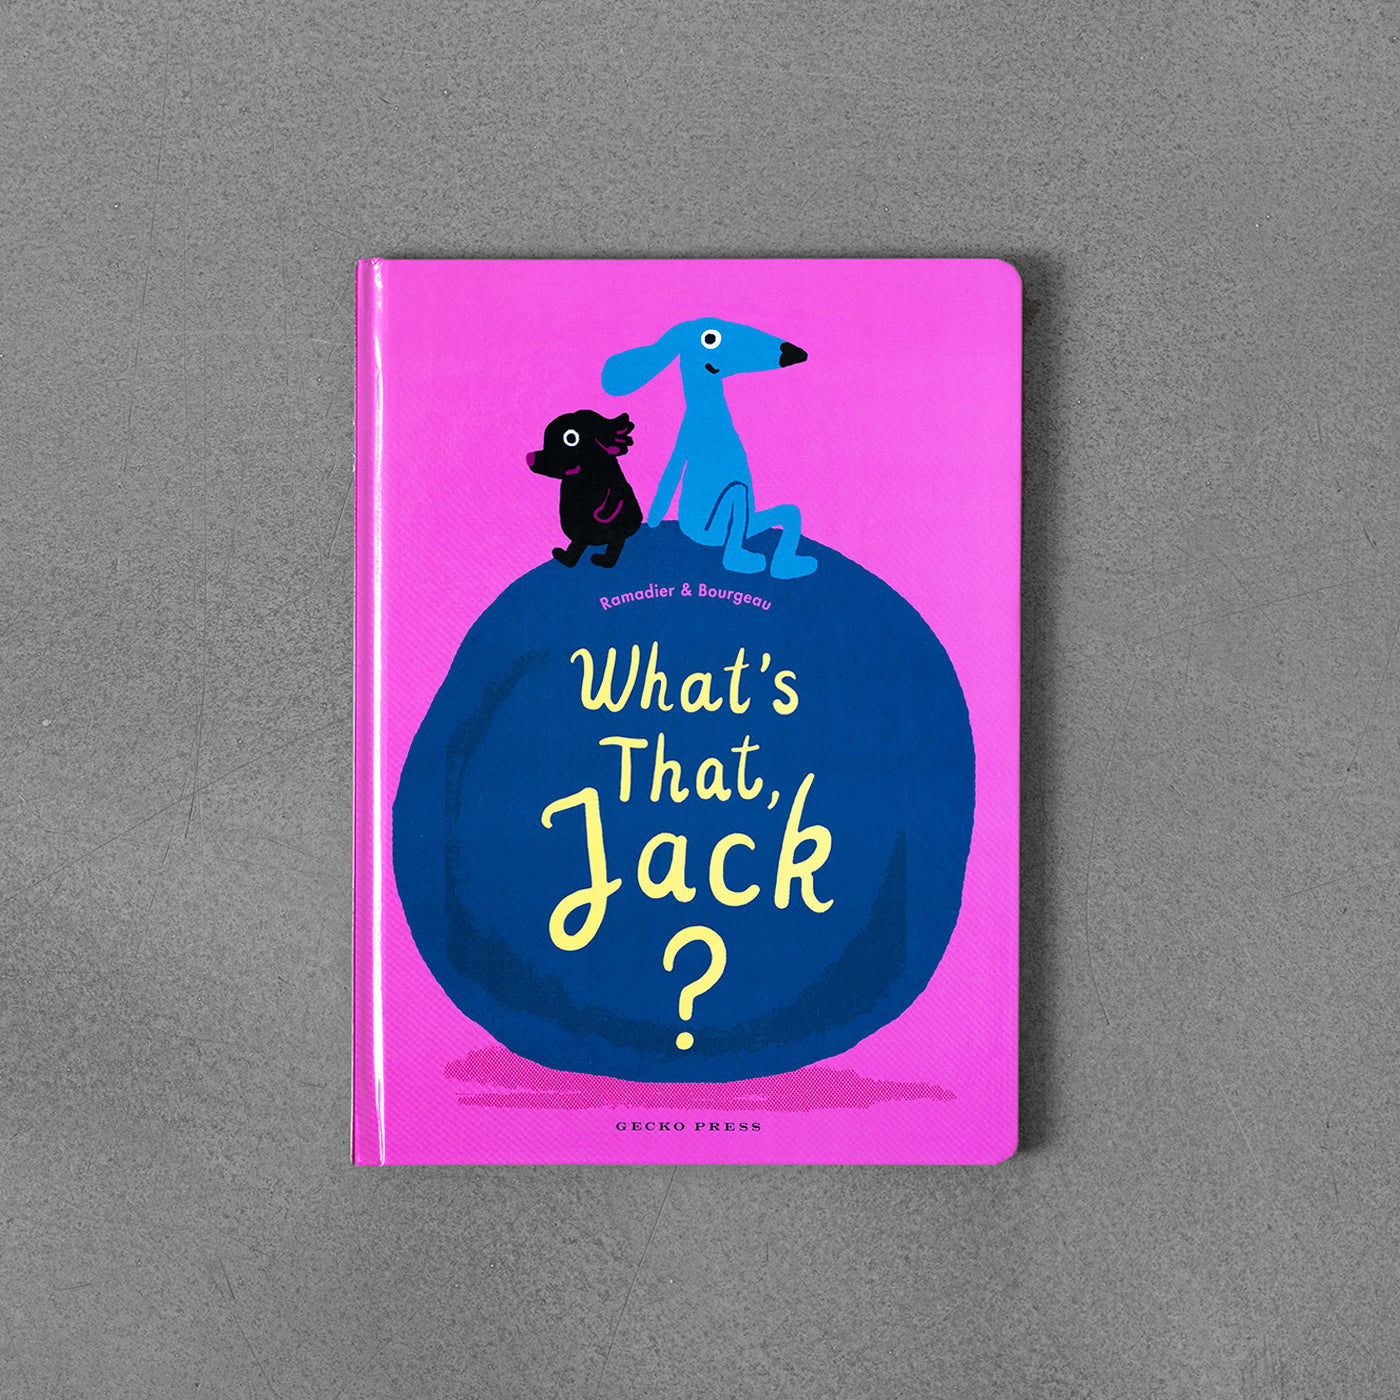 Co to jest, Jacku?